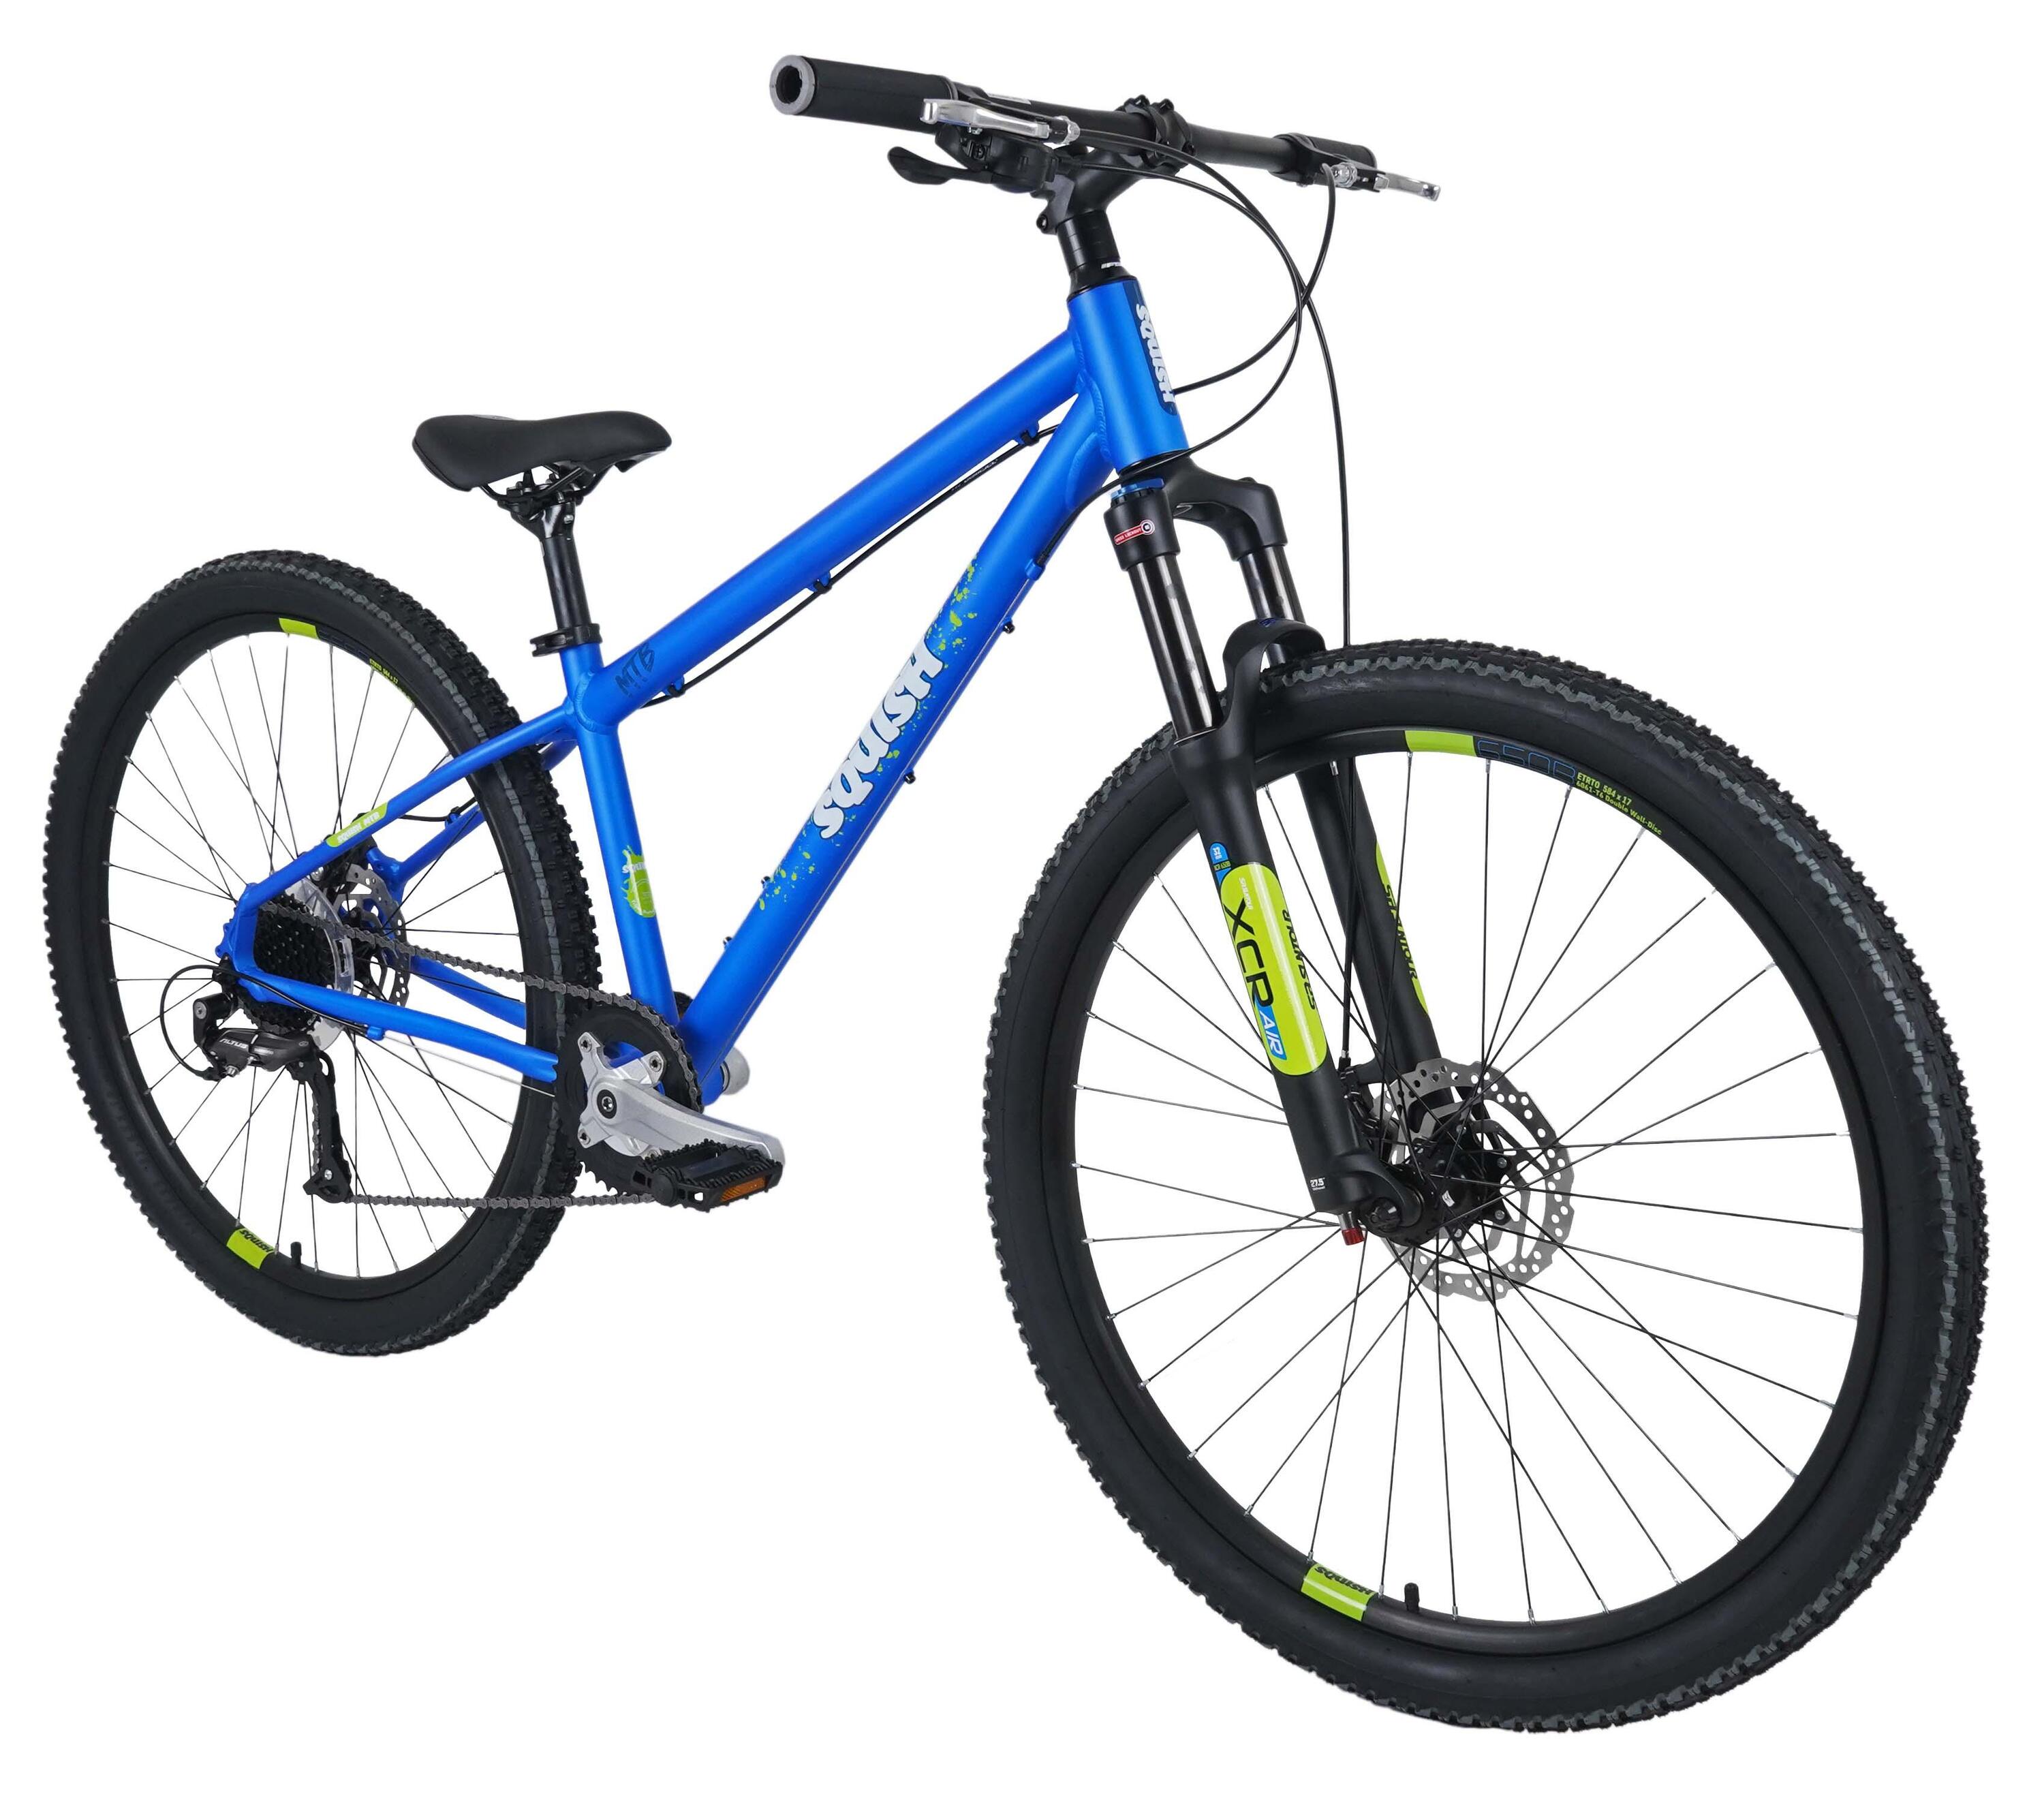 SQUISH 27.5" Wheel Mountain Bike Blue